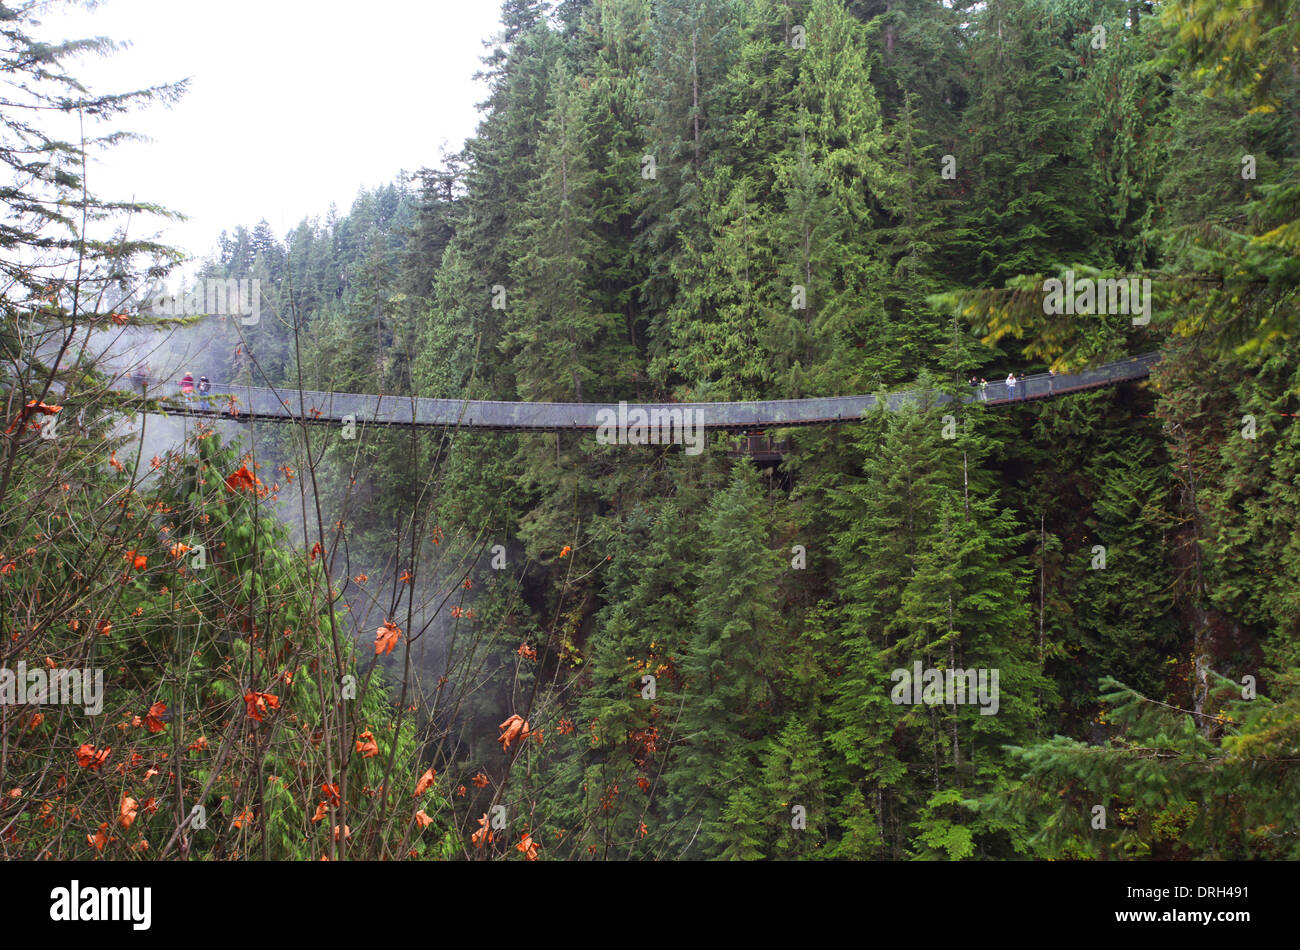 Capilano suspension bridge near Vancouver in Canada Stock Photo